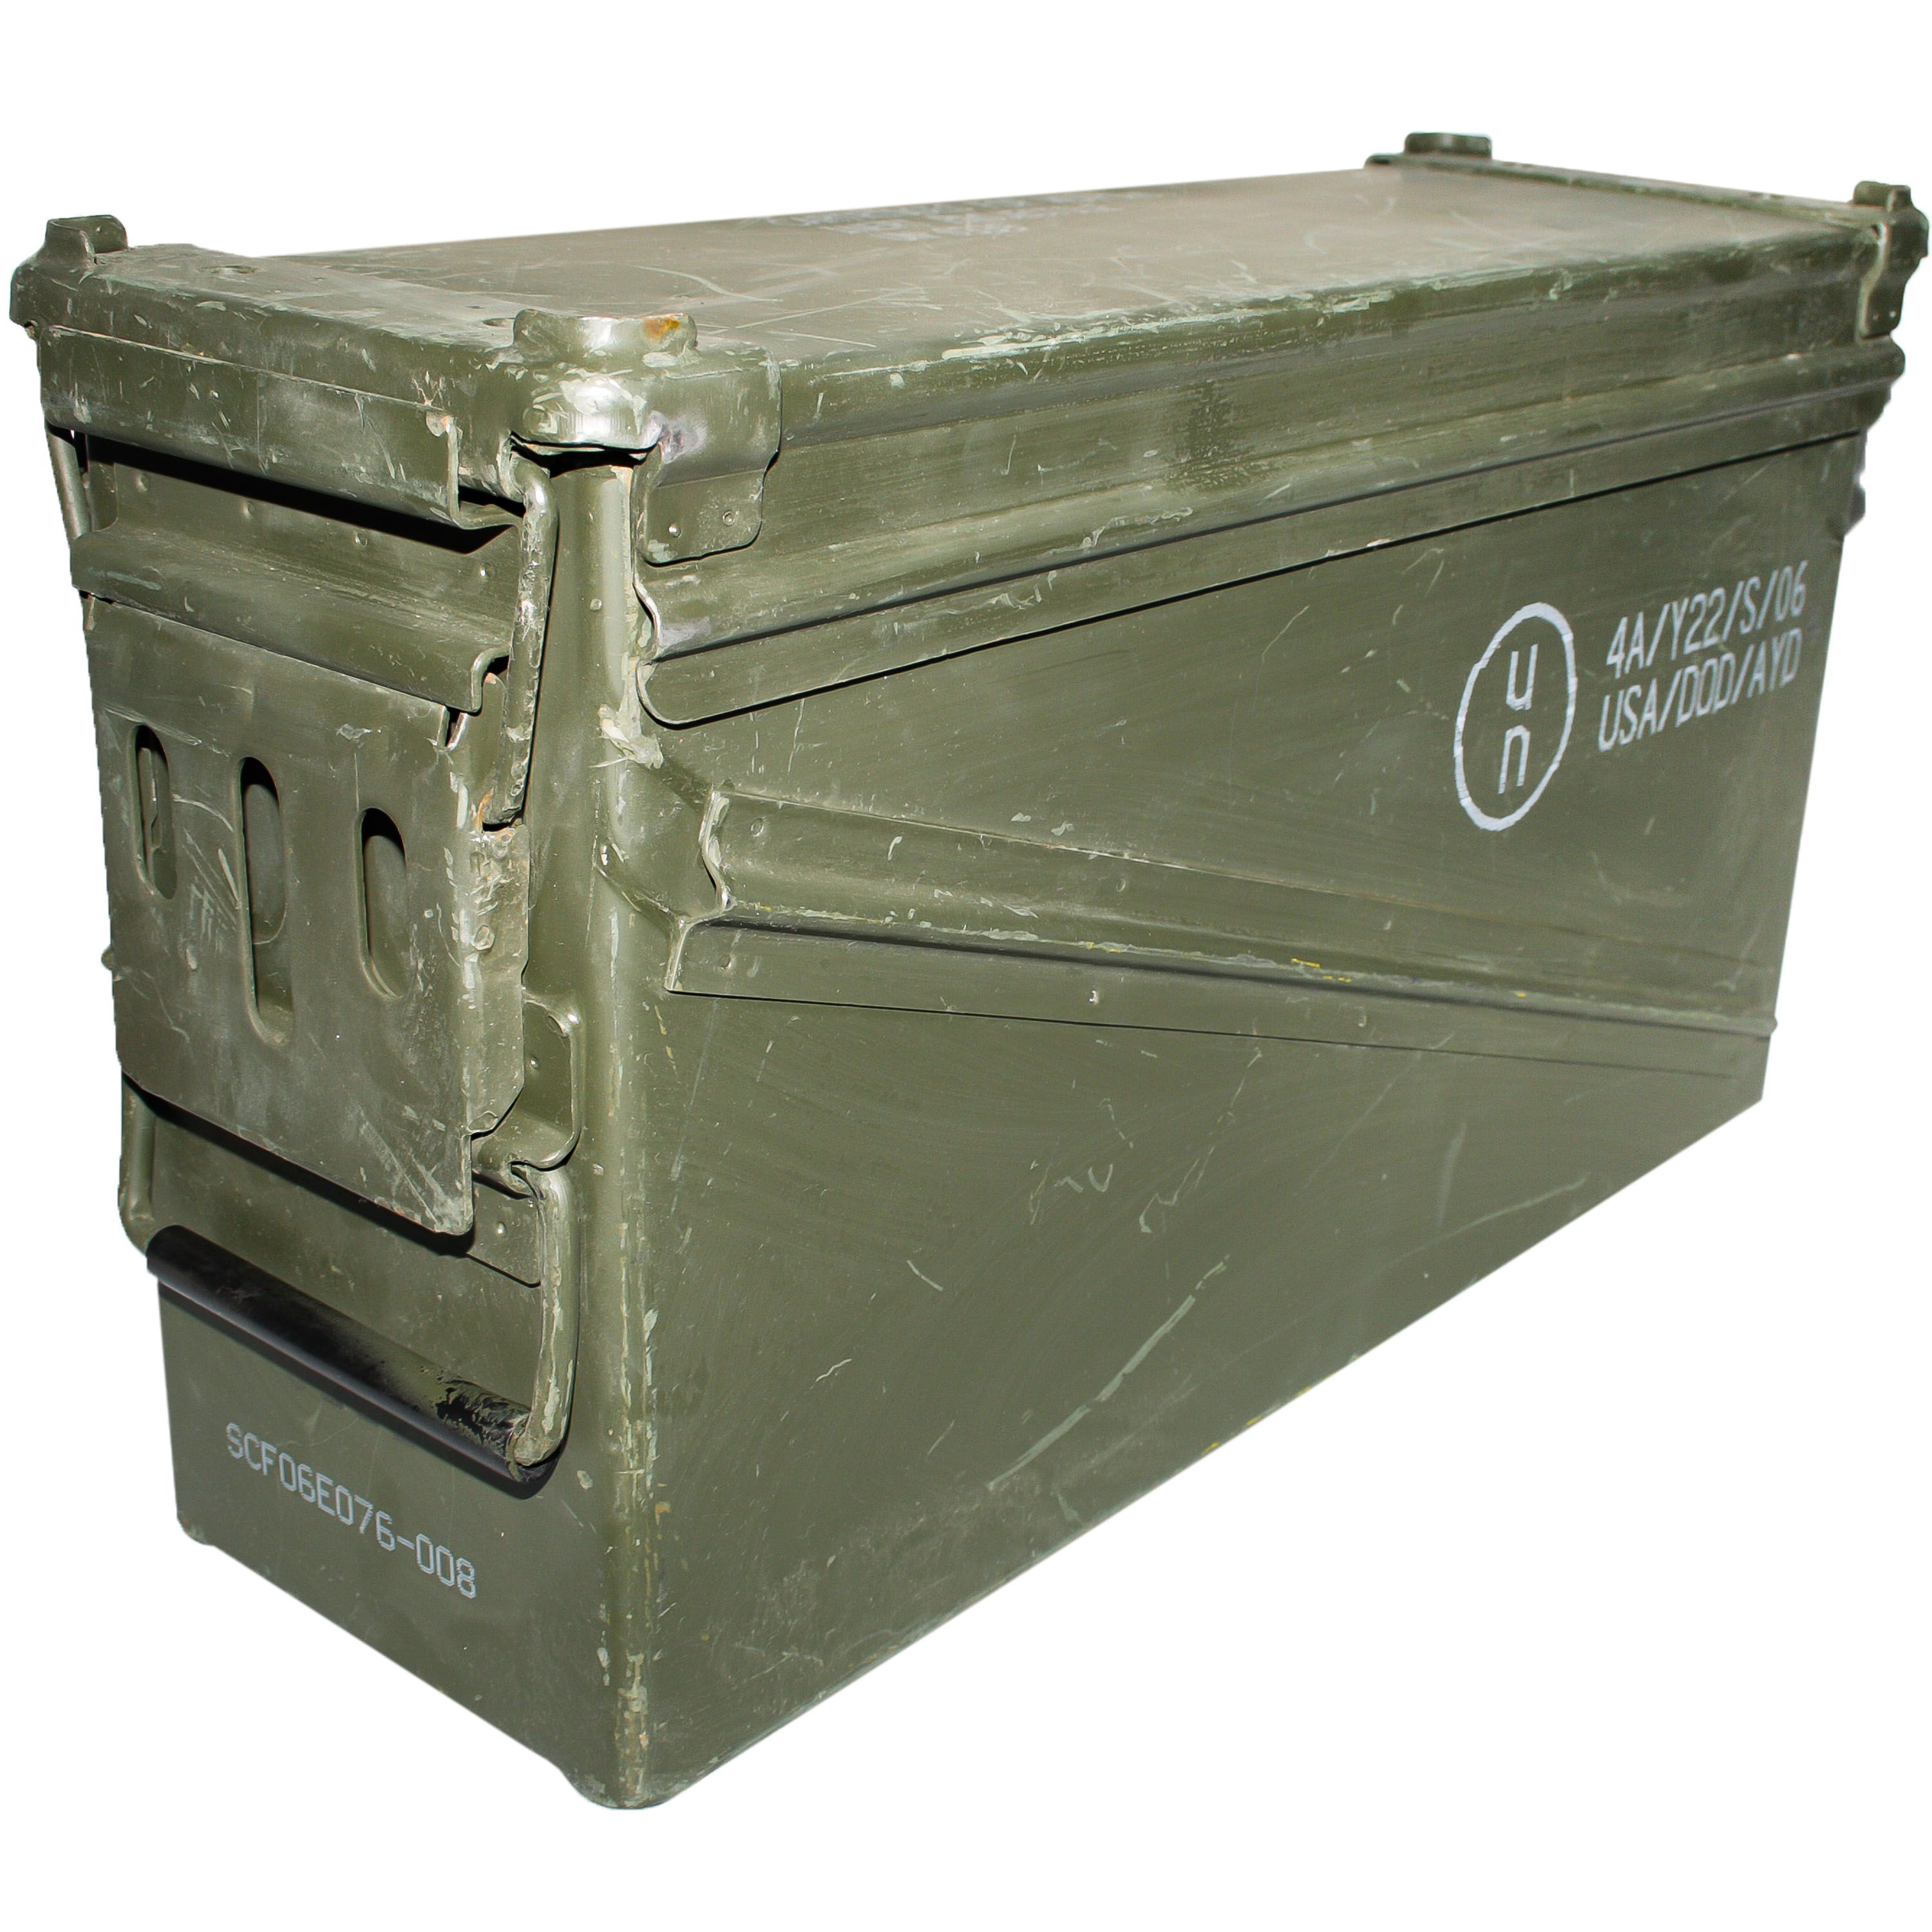 2 Bundeswehr Kiste Munitionskiste aus Metall der U.S gebraucht mit dichtung Gr 